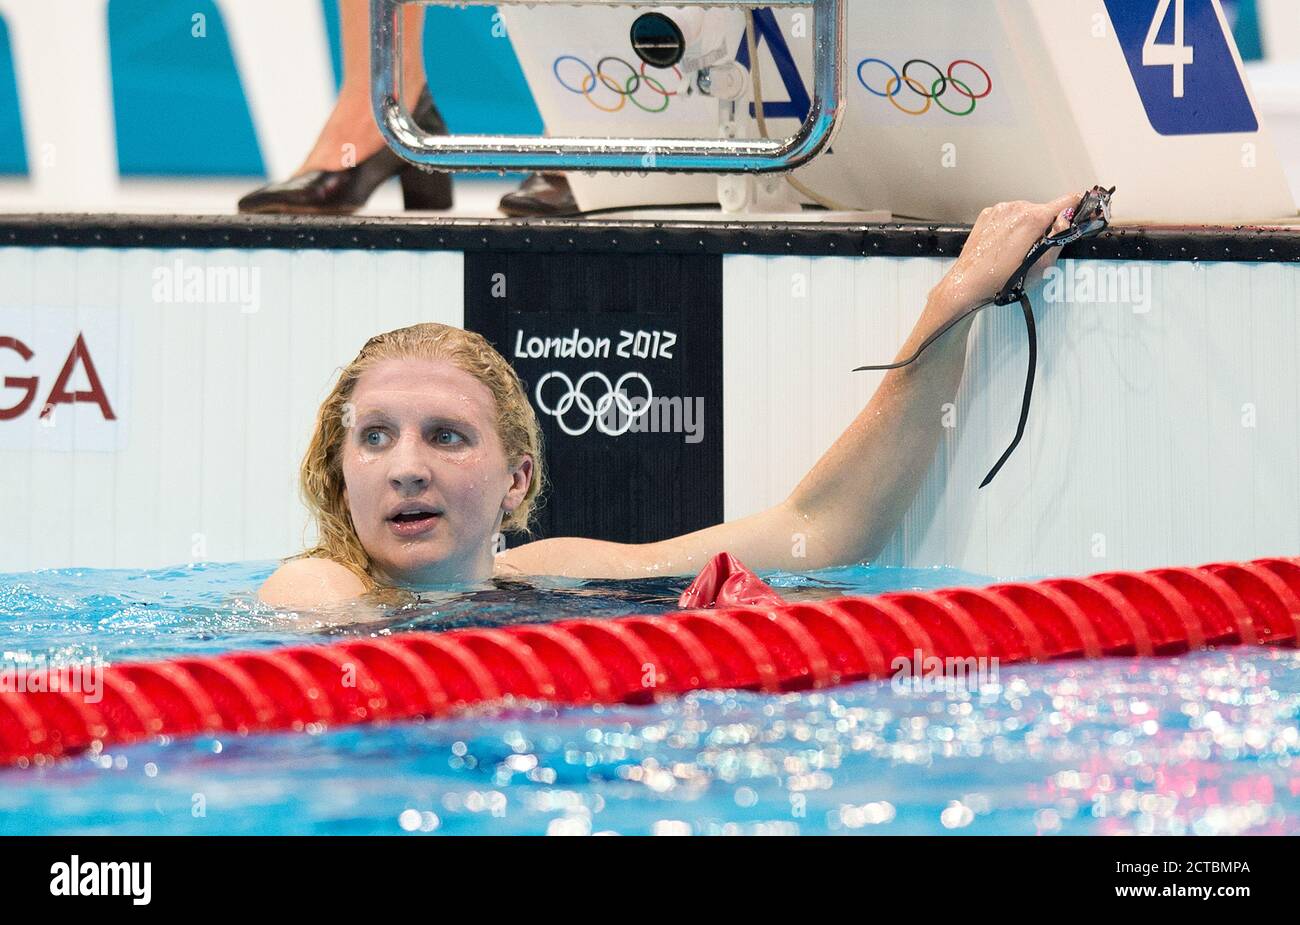 Frauen's 800m Freestyle Final Rebecca Adlington sieht enttäuscht aus, nachdem sie die Bronzemedaille gewonnen hat. Olympische Spiele 2012 In London. BILD : © MARK PAIN / ALAMY Stockfoto